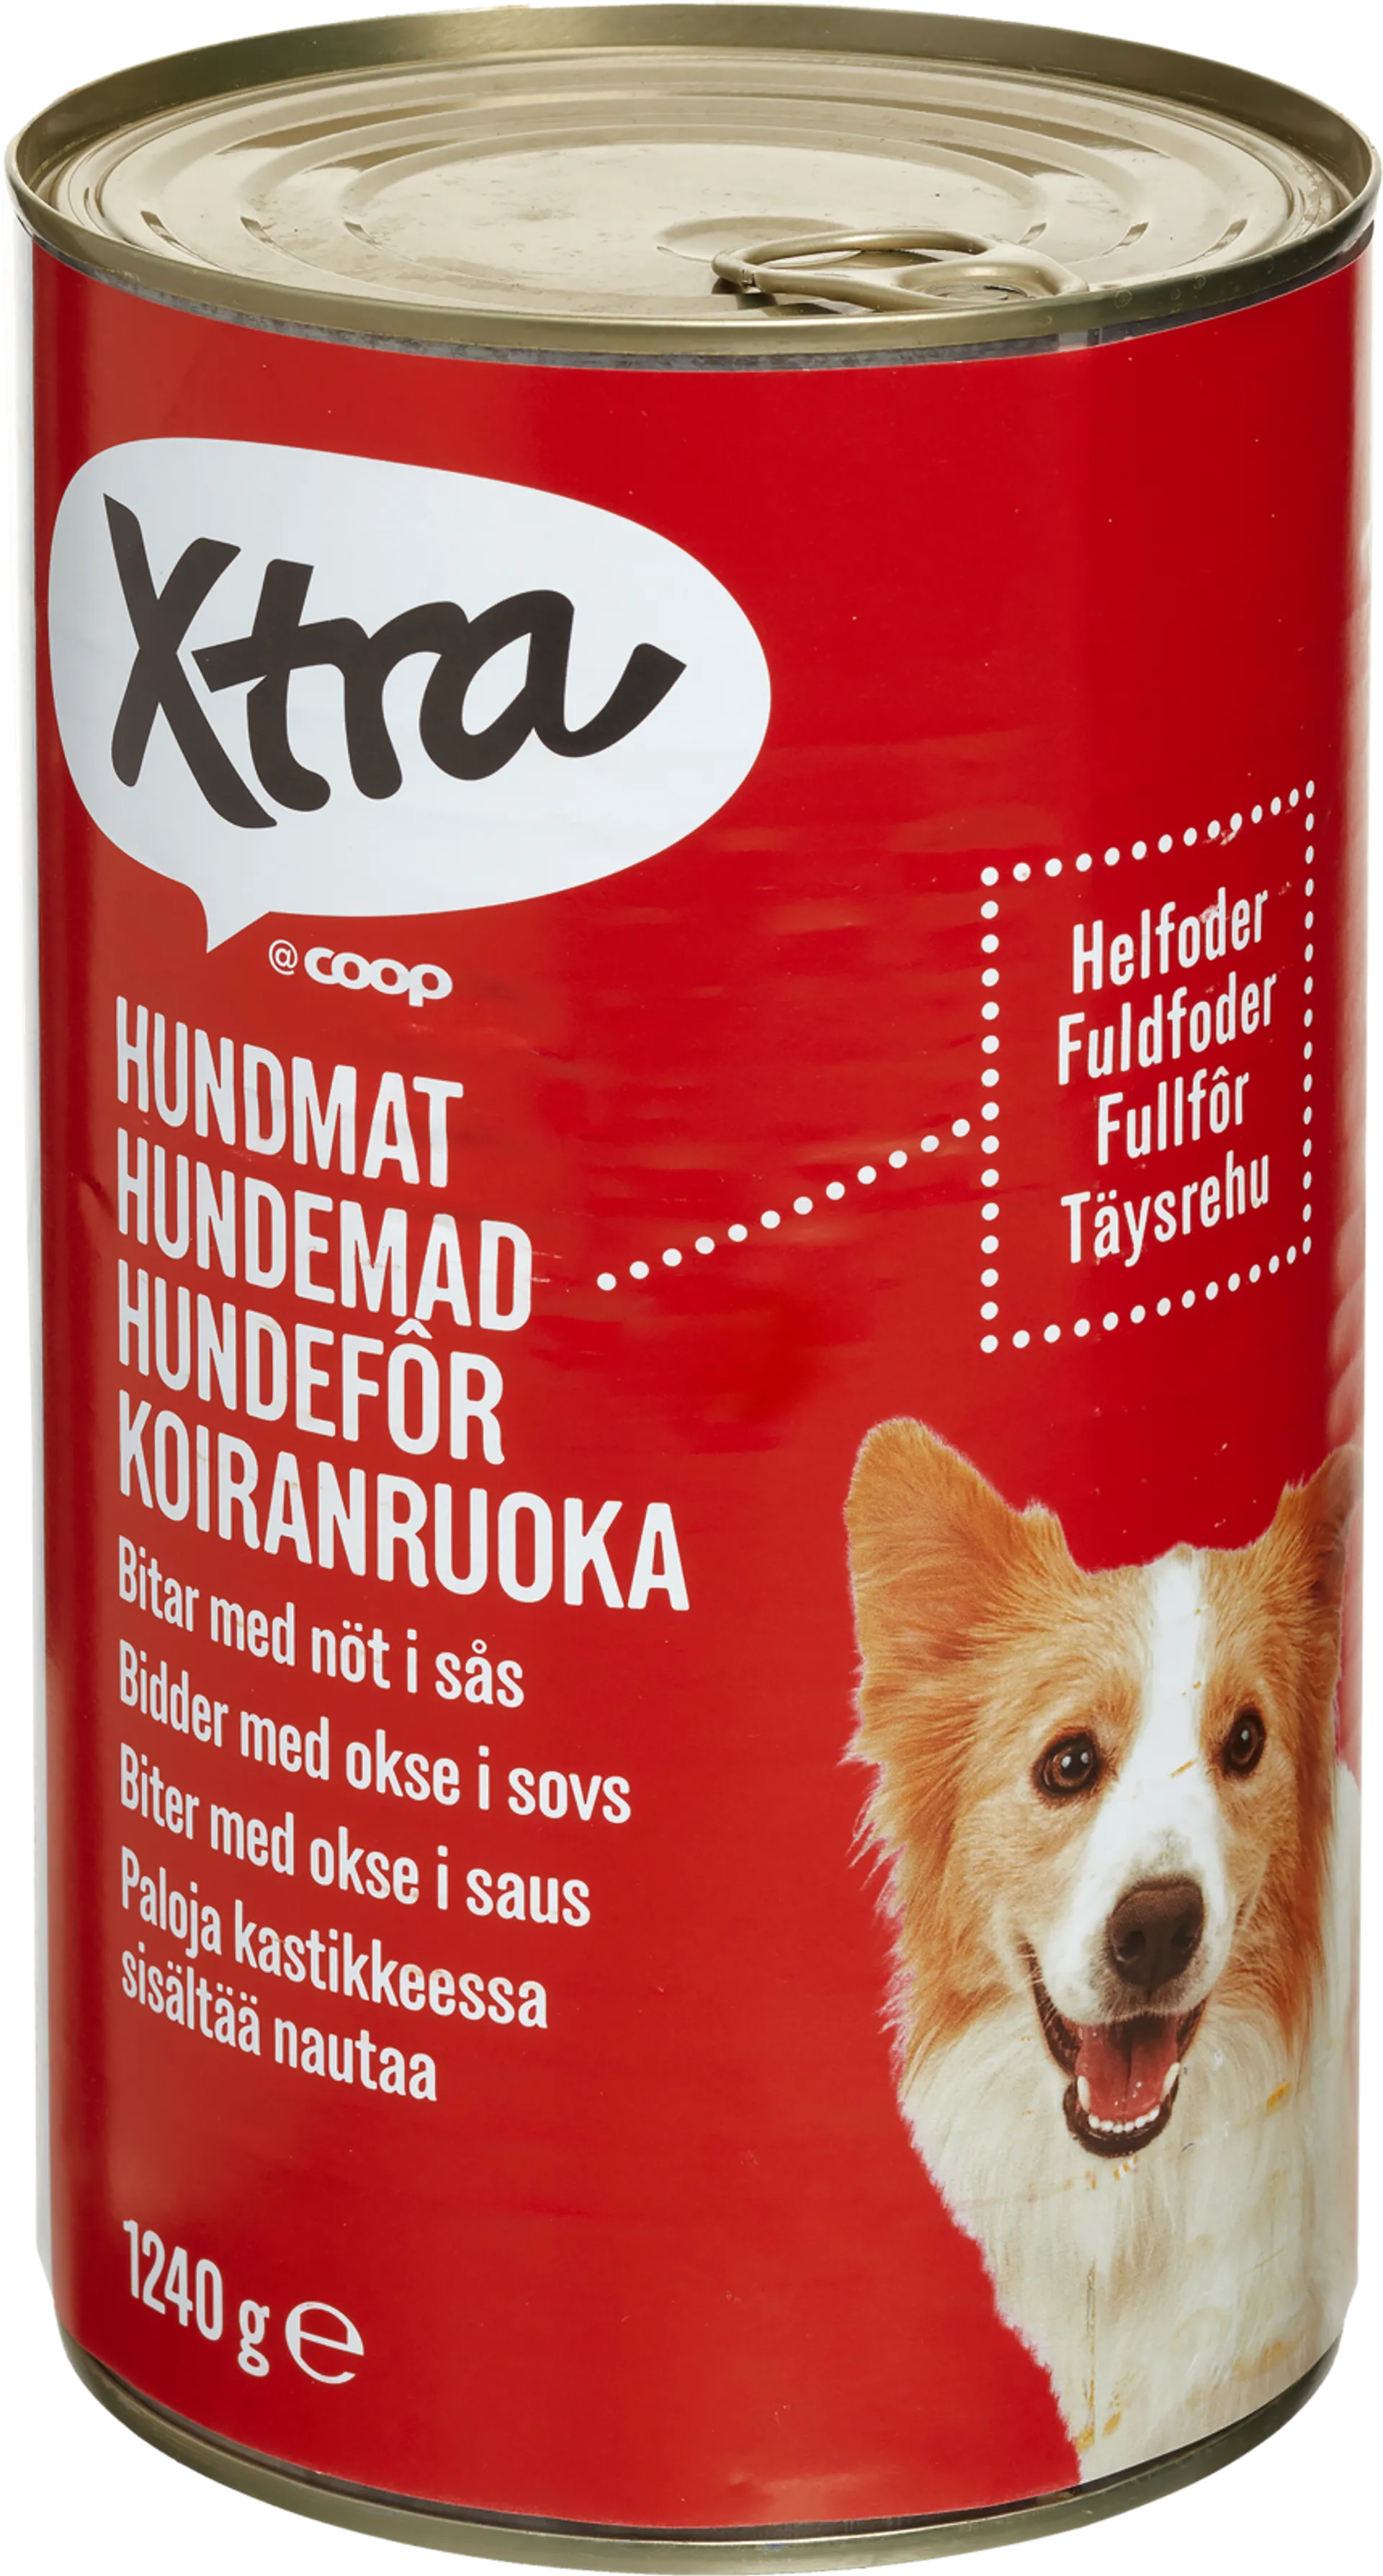 Xtra koiranruoka paloja kastikkeessa, sisältää nautaa 1240 g